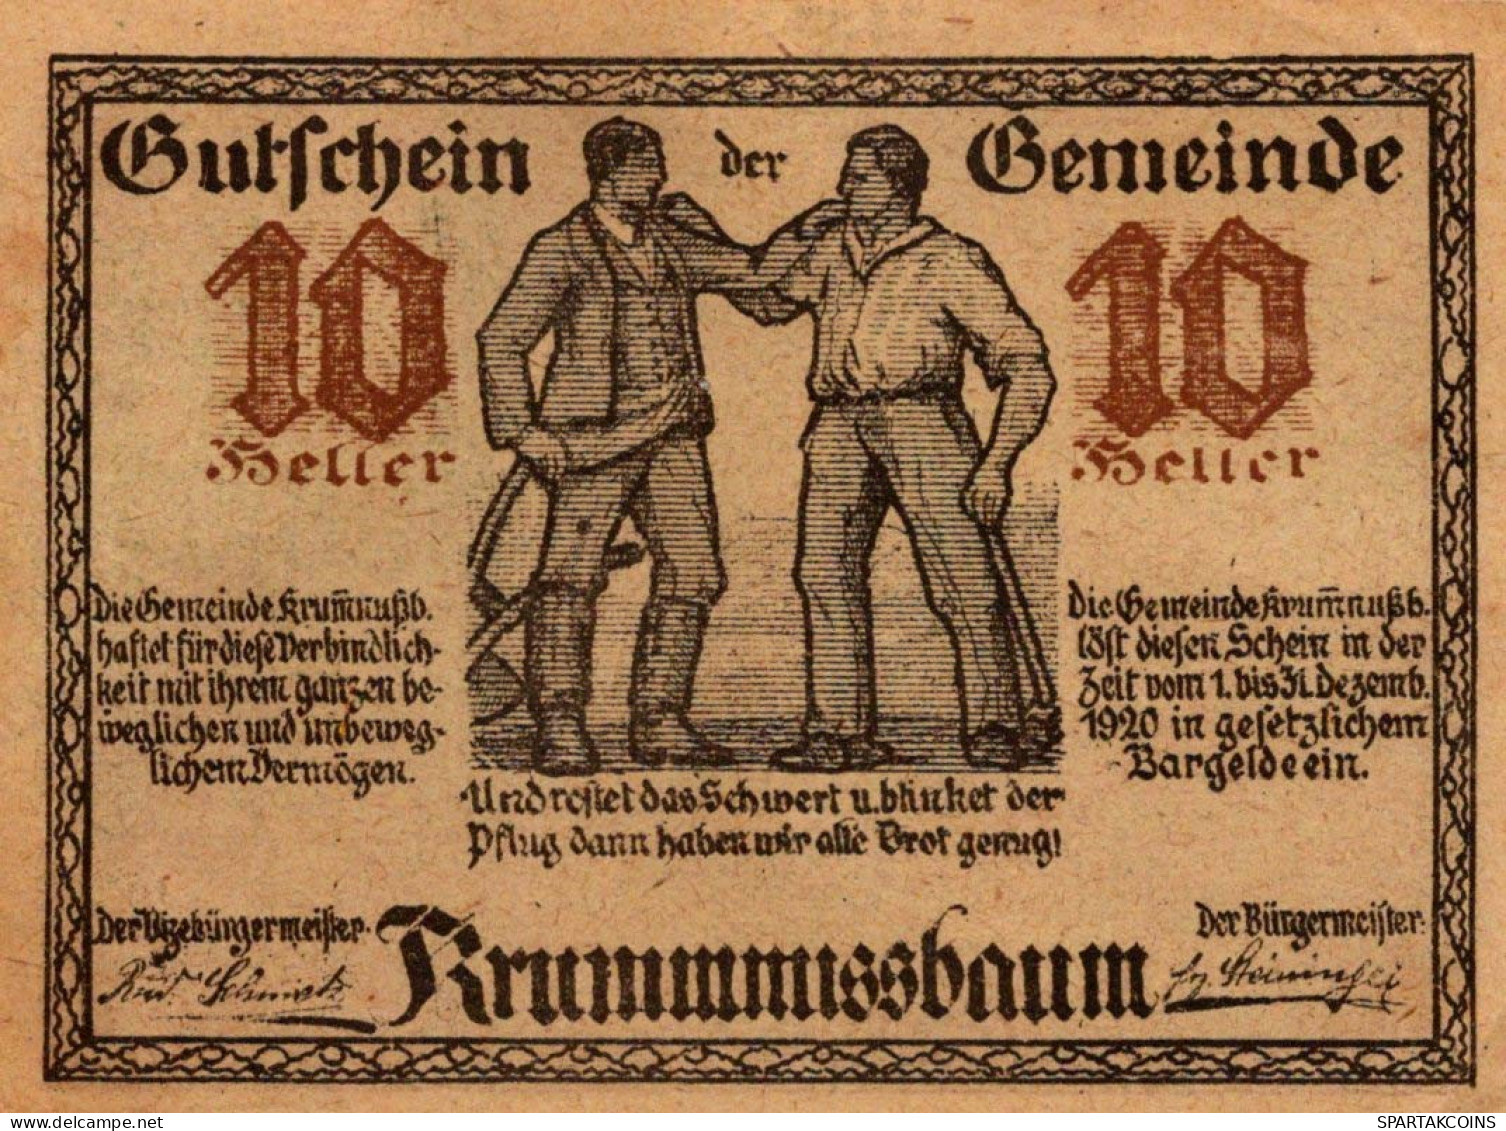 10 HELLER 1920 Stadt KRUMMNUSSBAUM Niedrigeren Österreich Notgeld #PD658 - [11] Lokale Uitgaven